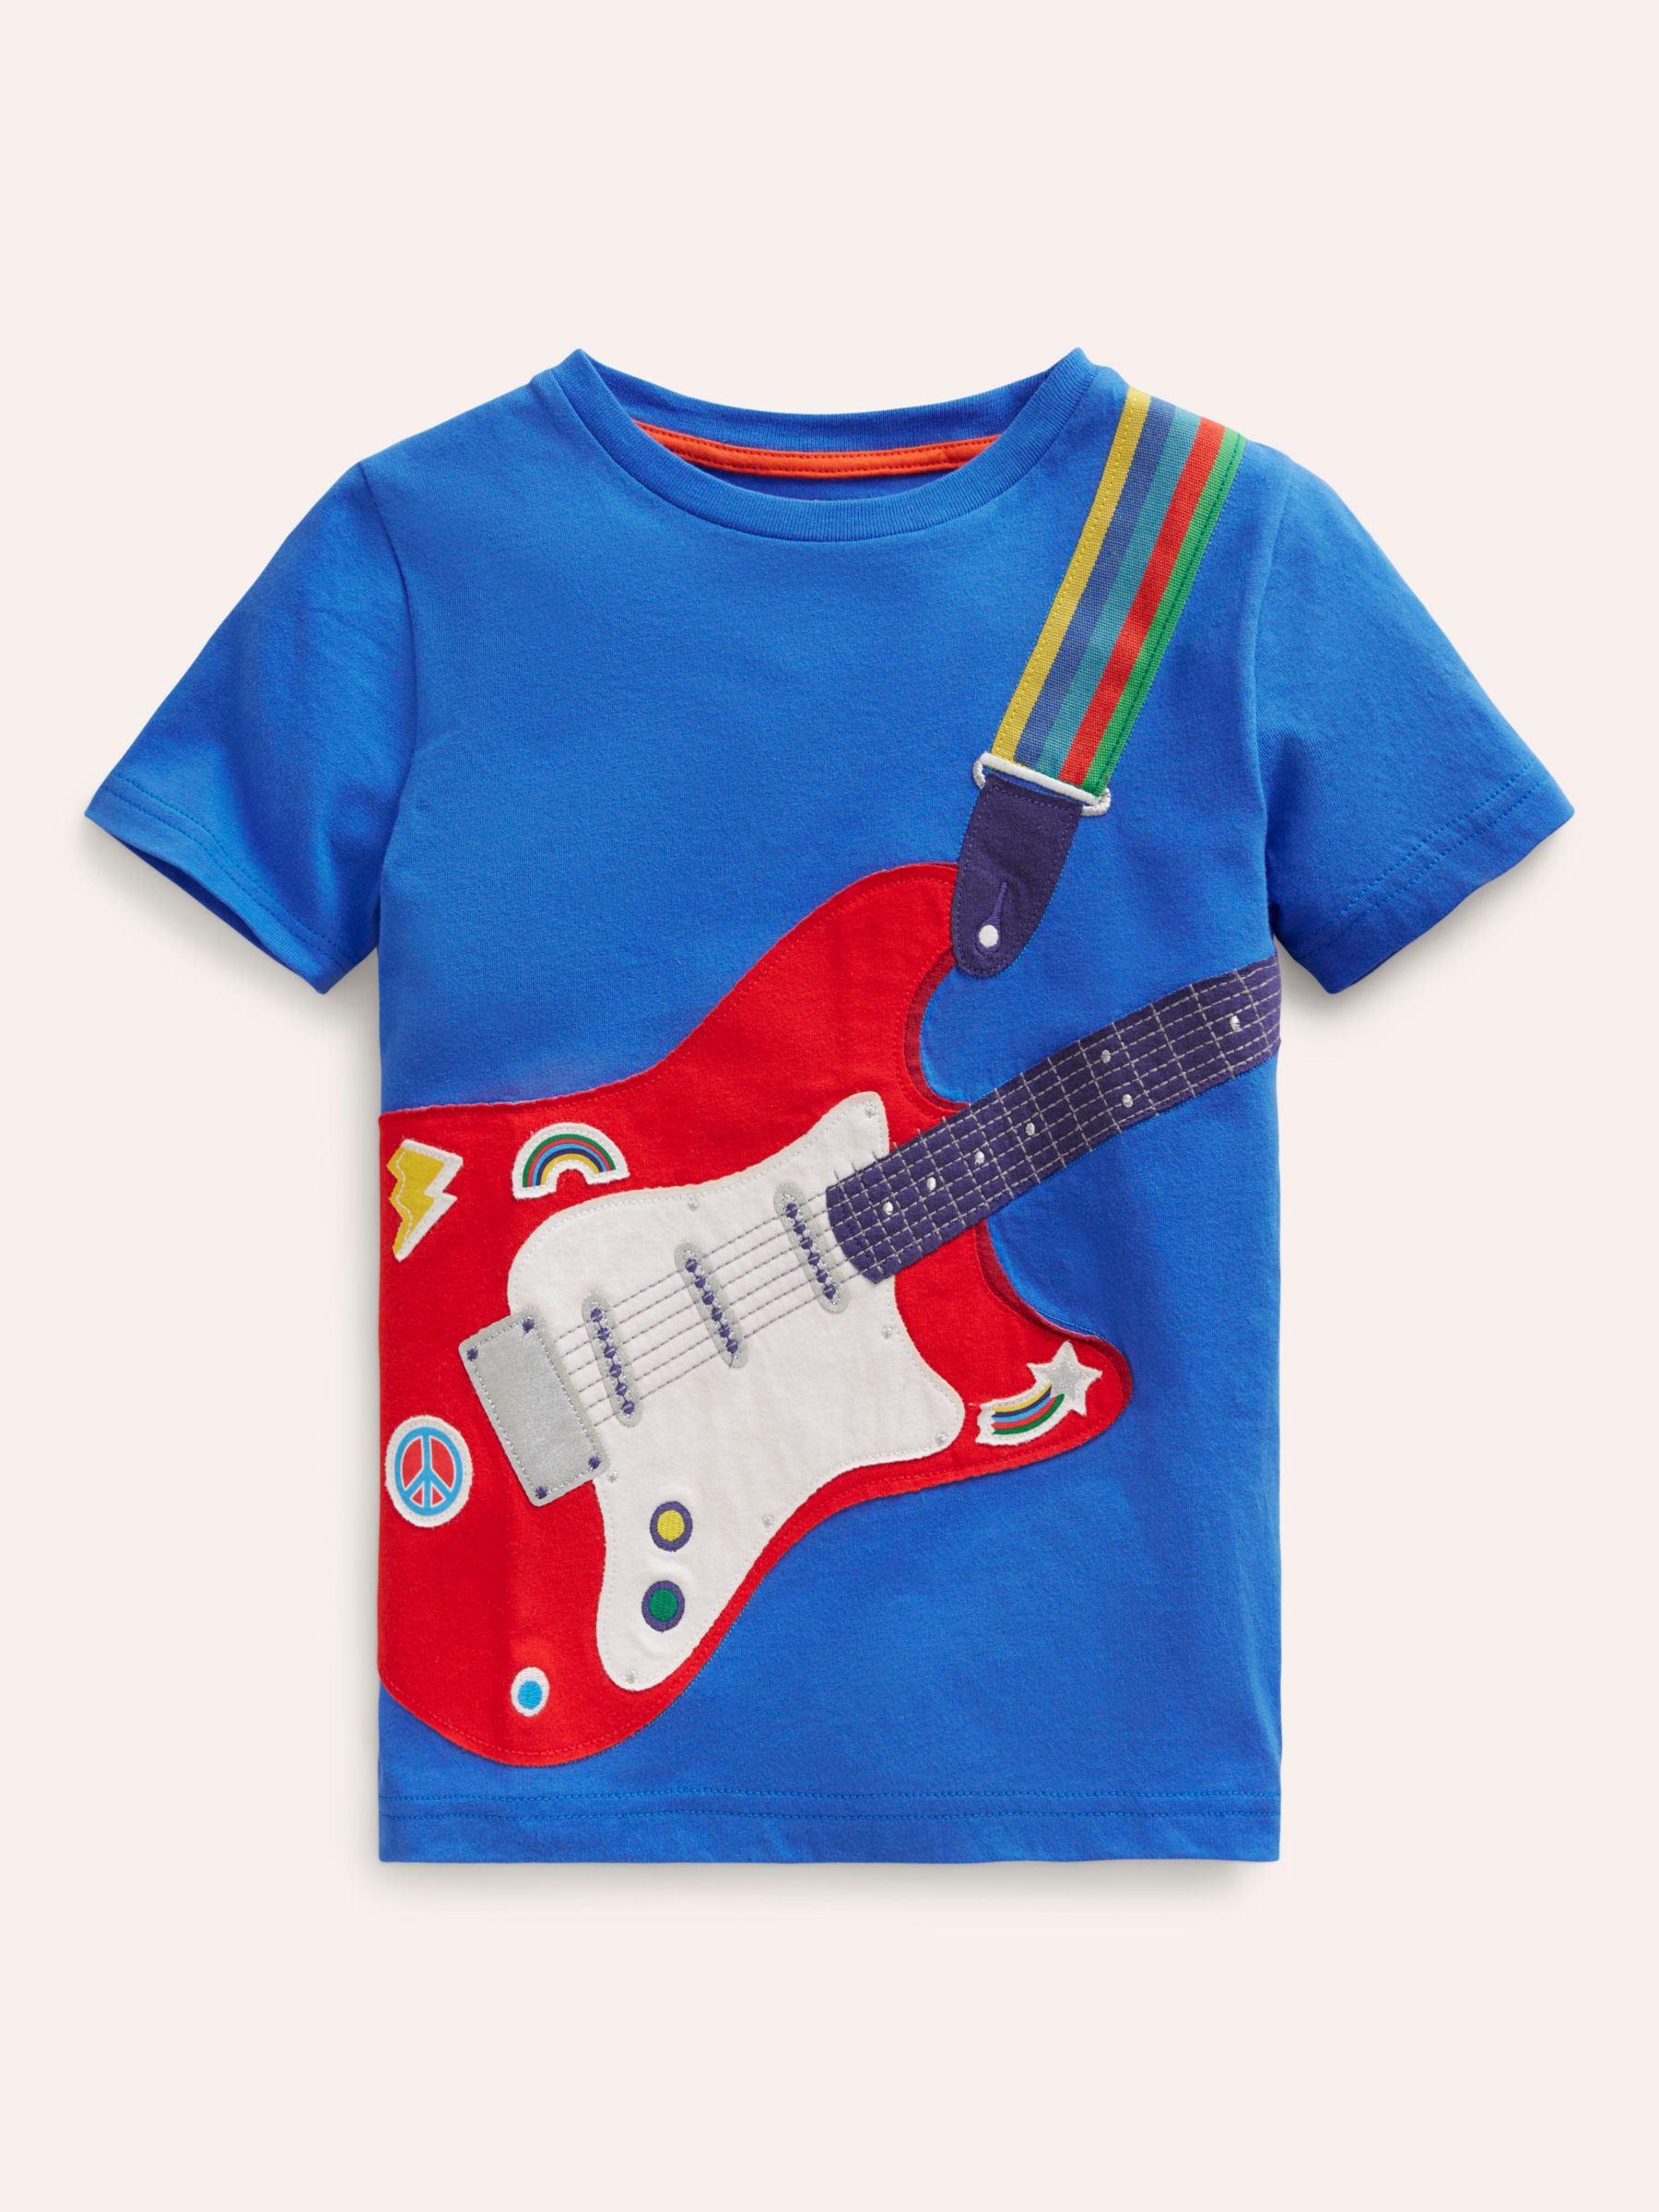 Mini Boden Kids' Guitar Applique T-Shirt, Duck Egg Blue, 2-3 years